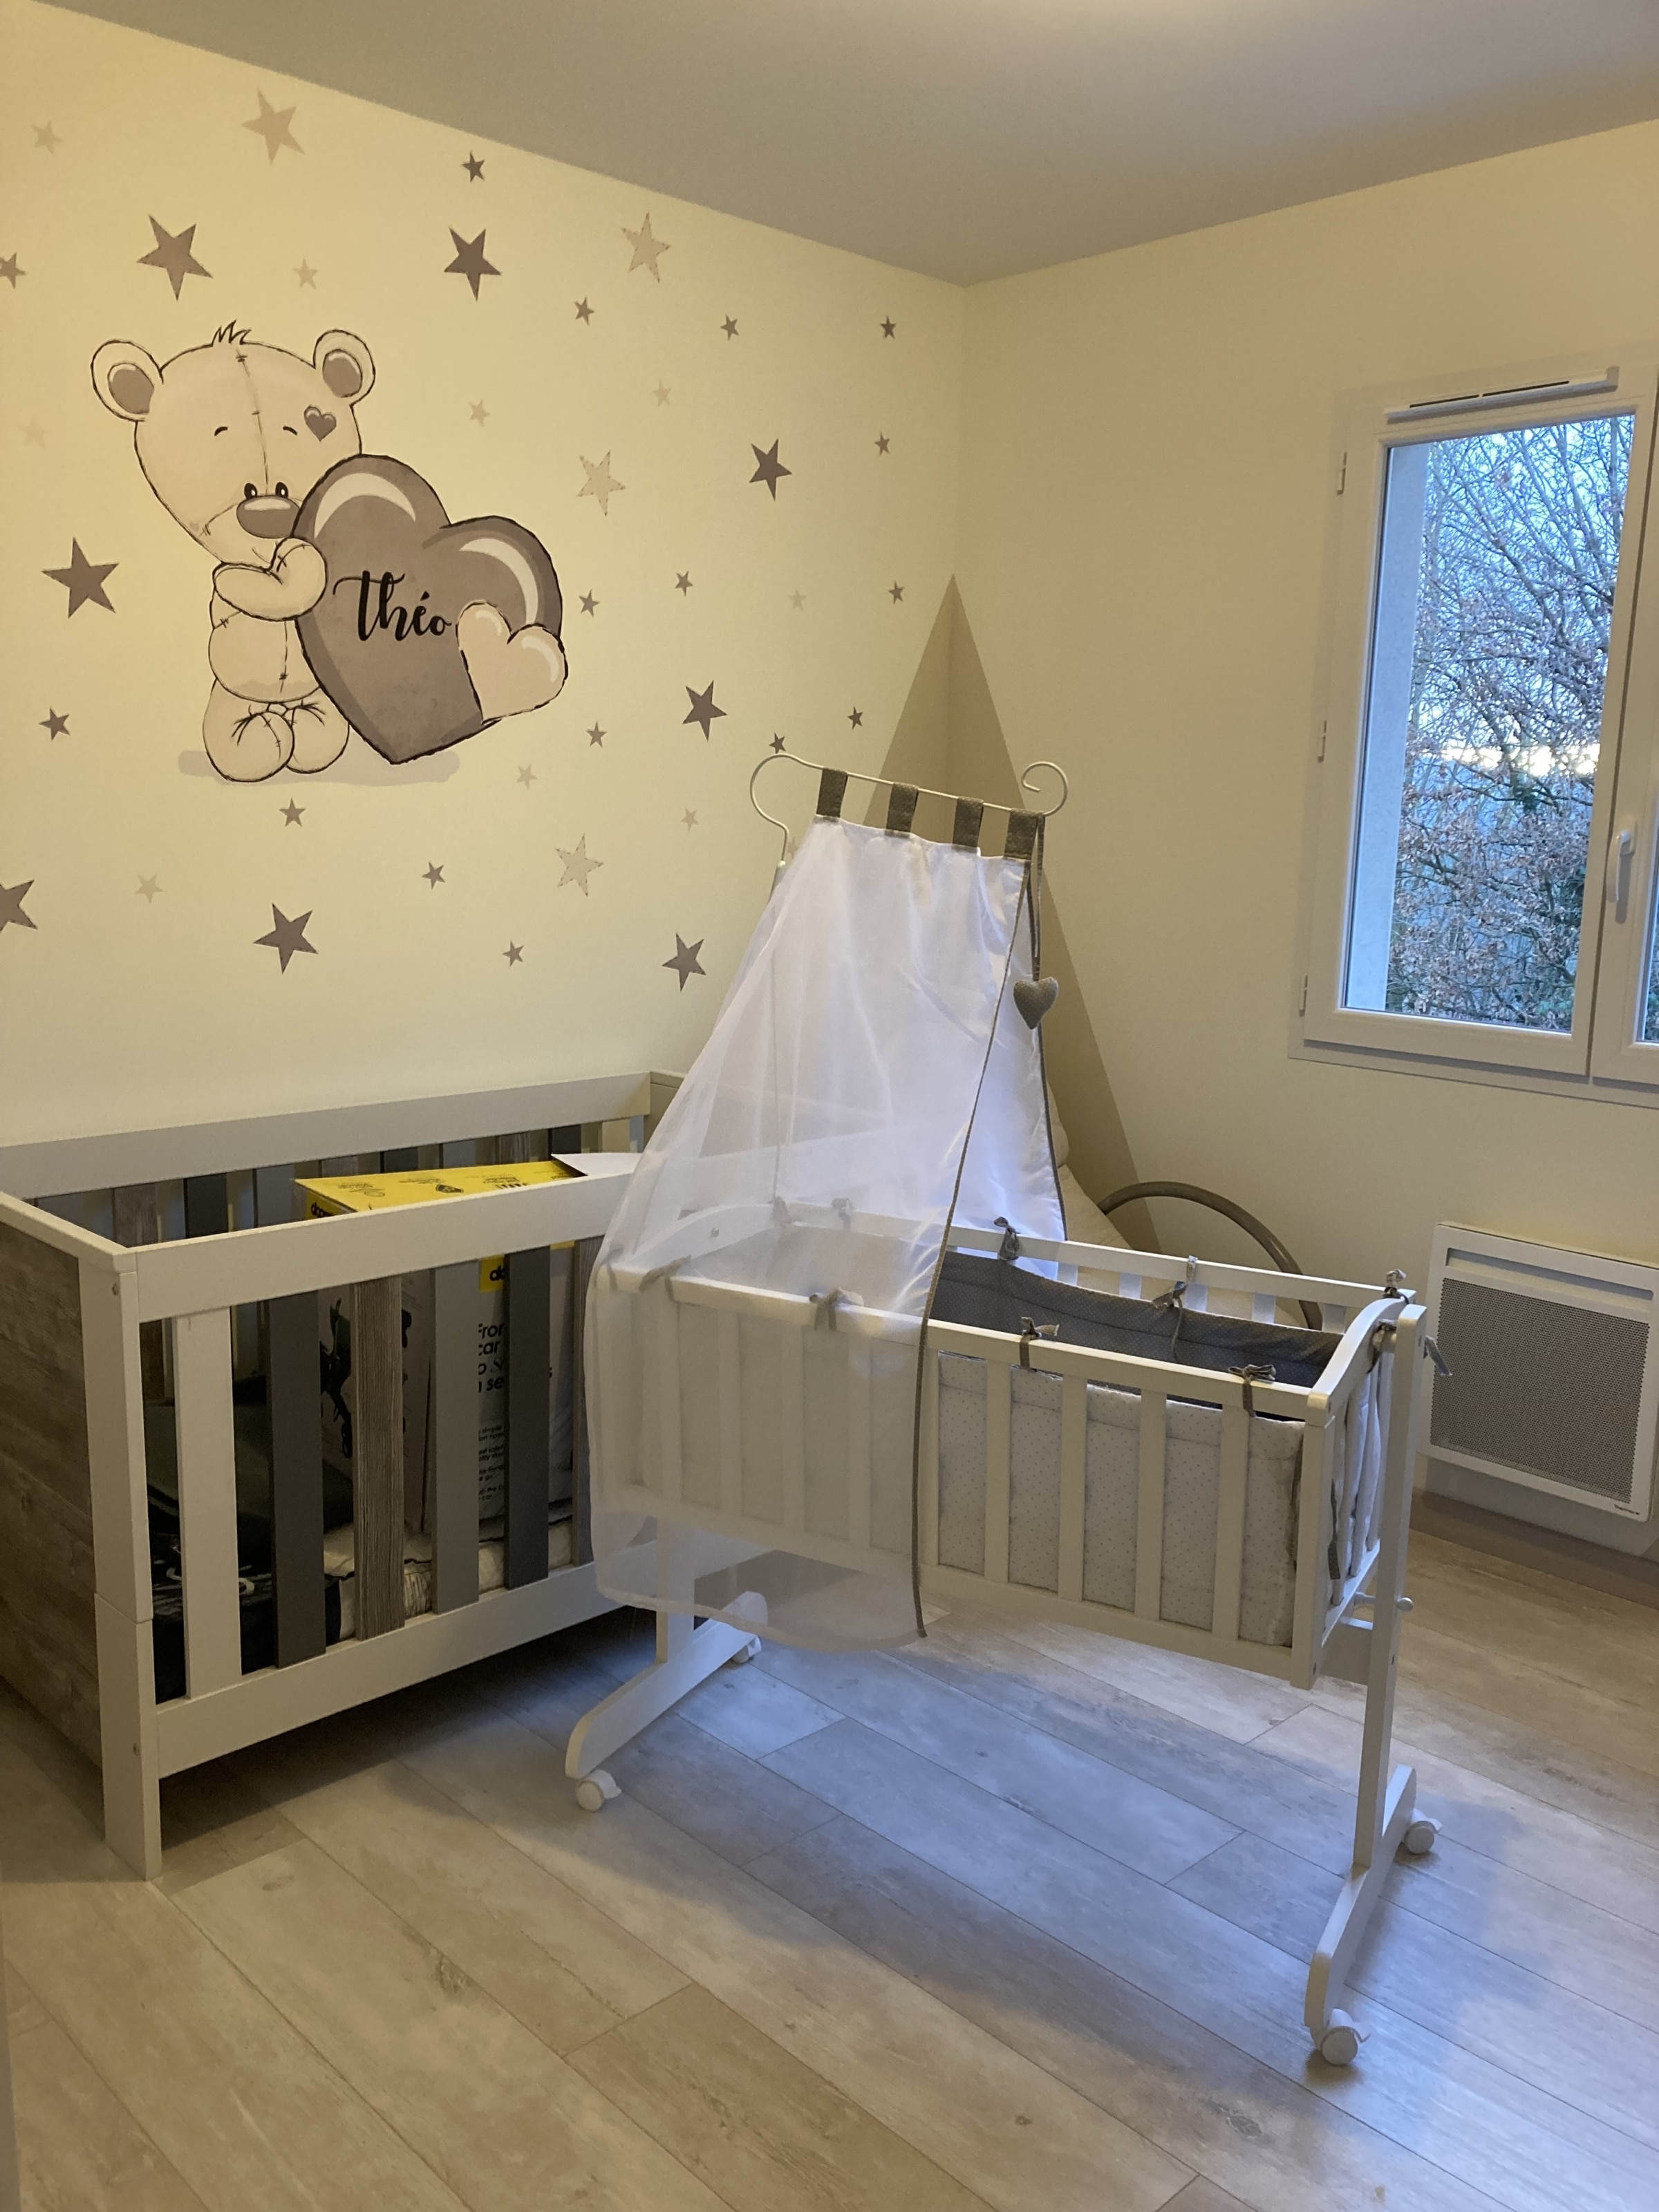 Nos idées pour décorer une chambre bébé ou une chambre enfant - Blog